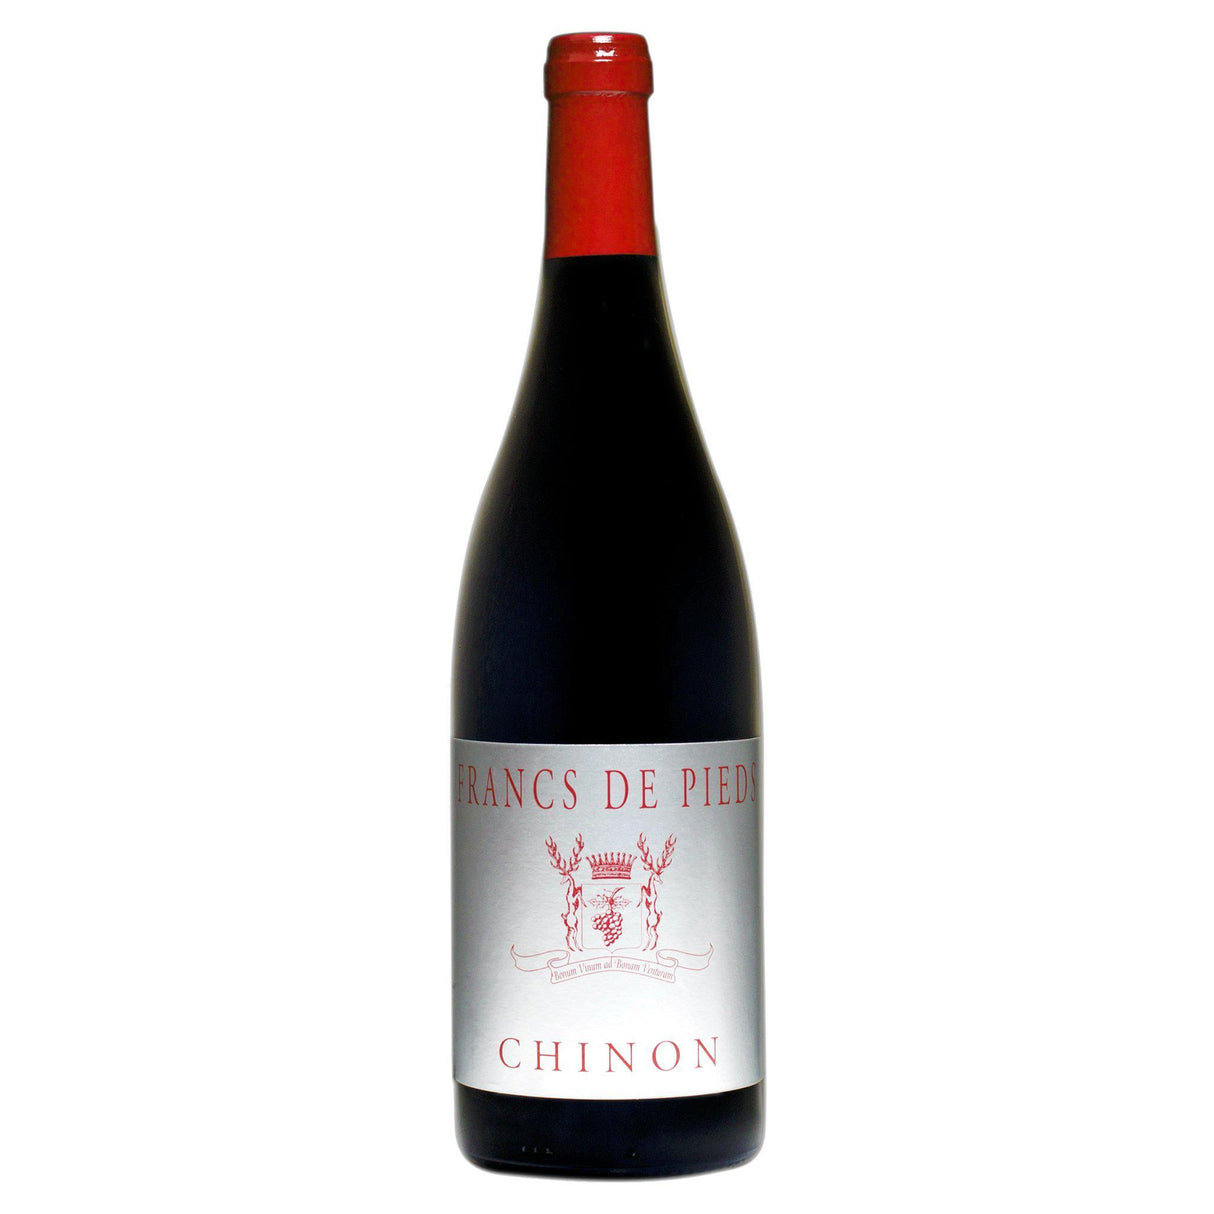 Chateau de Coulaine Chinon Franc de Pied 2013-Red Wine-World Wine